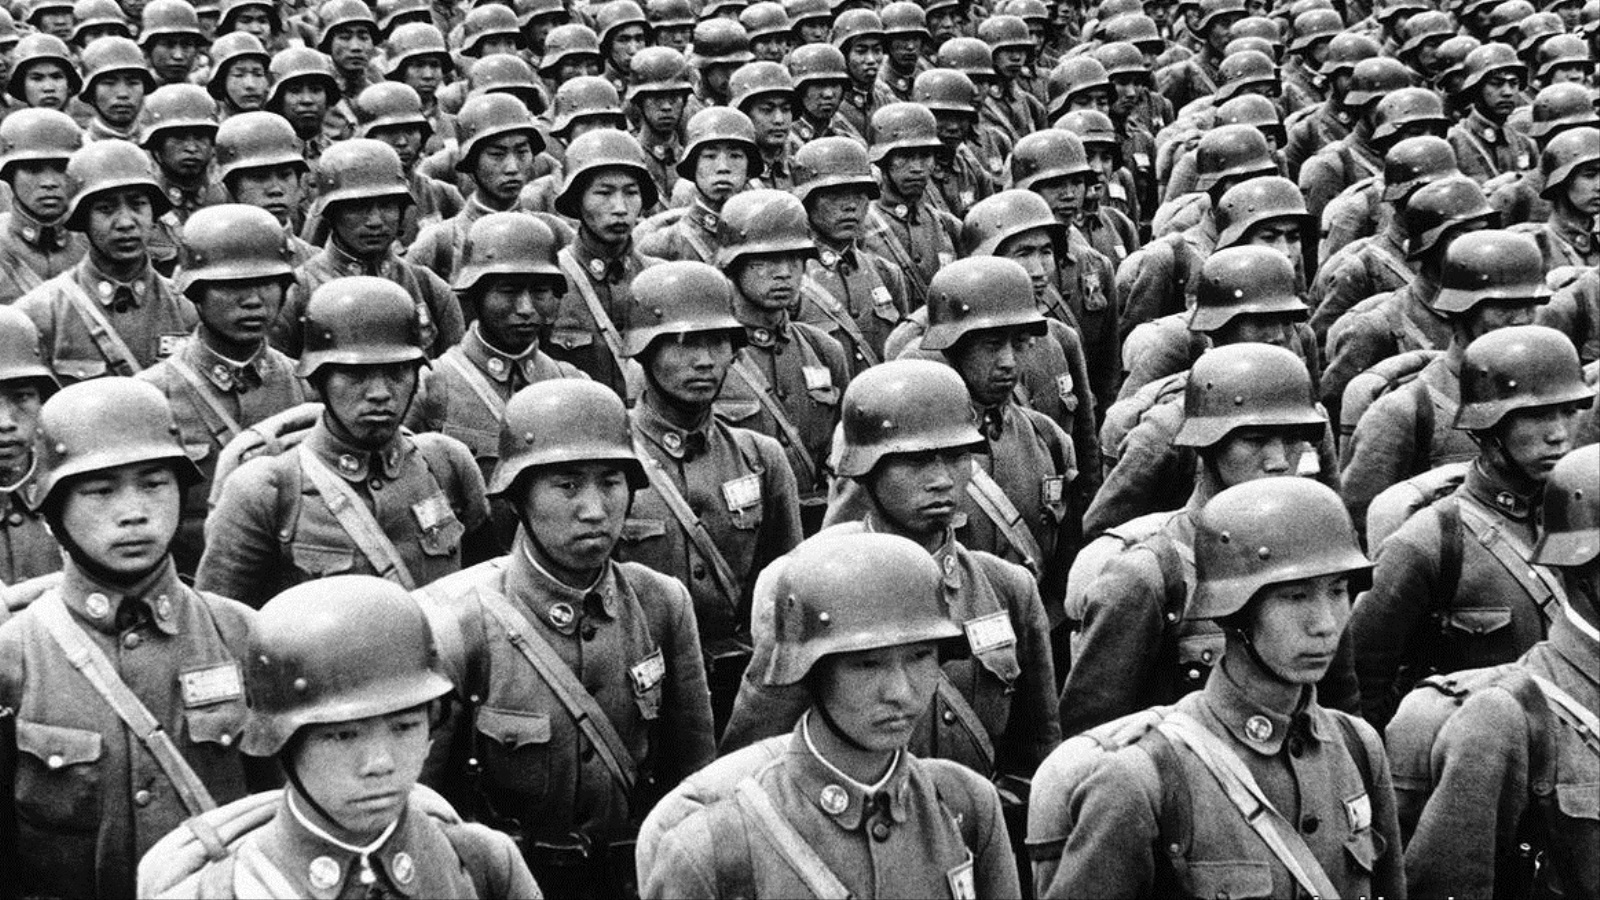 لعبت عمليات التعبئة المجتمعيّة الجماعيّة التي اقتضتها الحربُ دورا حاسما. فحوالي ربع السكان الذكور في اليابان خدموا في الجيش أثناء النّزاع